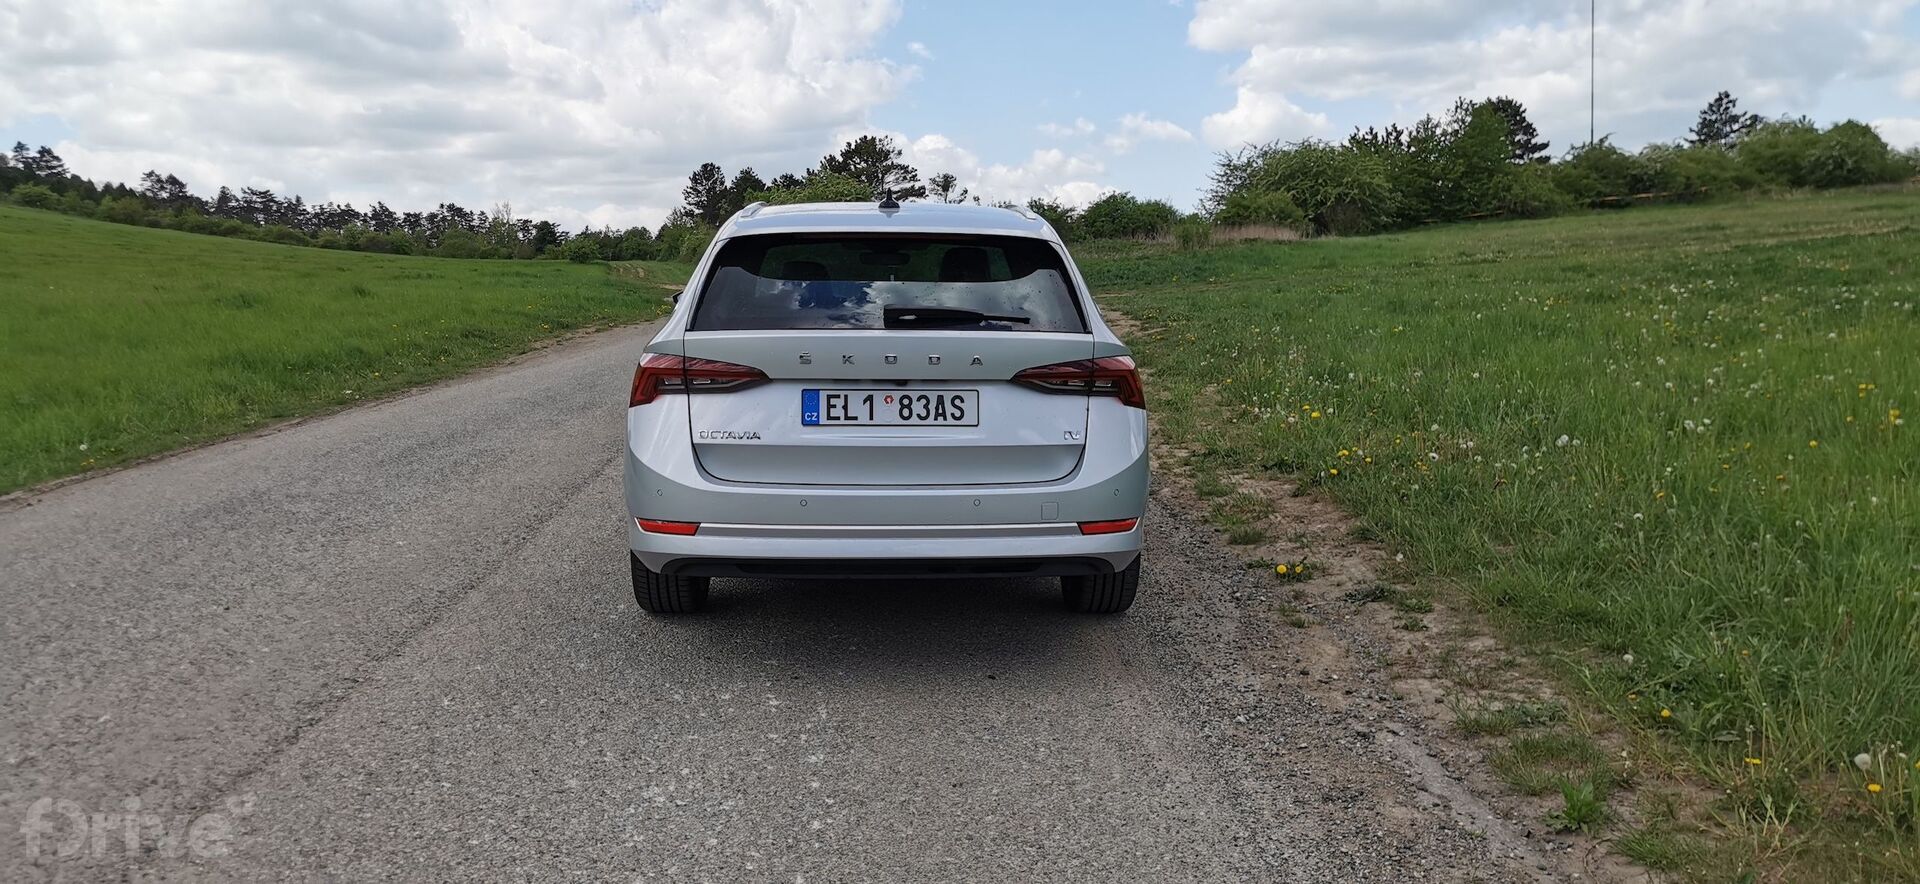 Škoda Octavia Combi iV